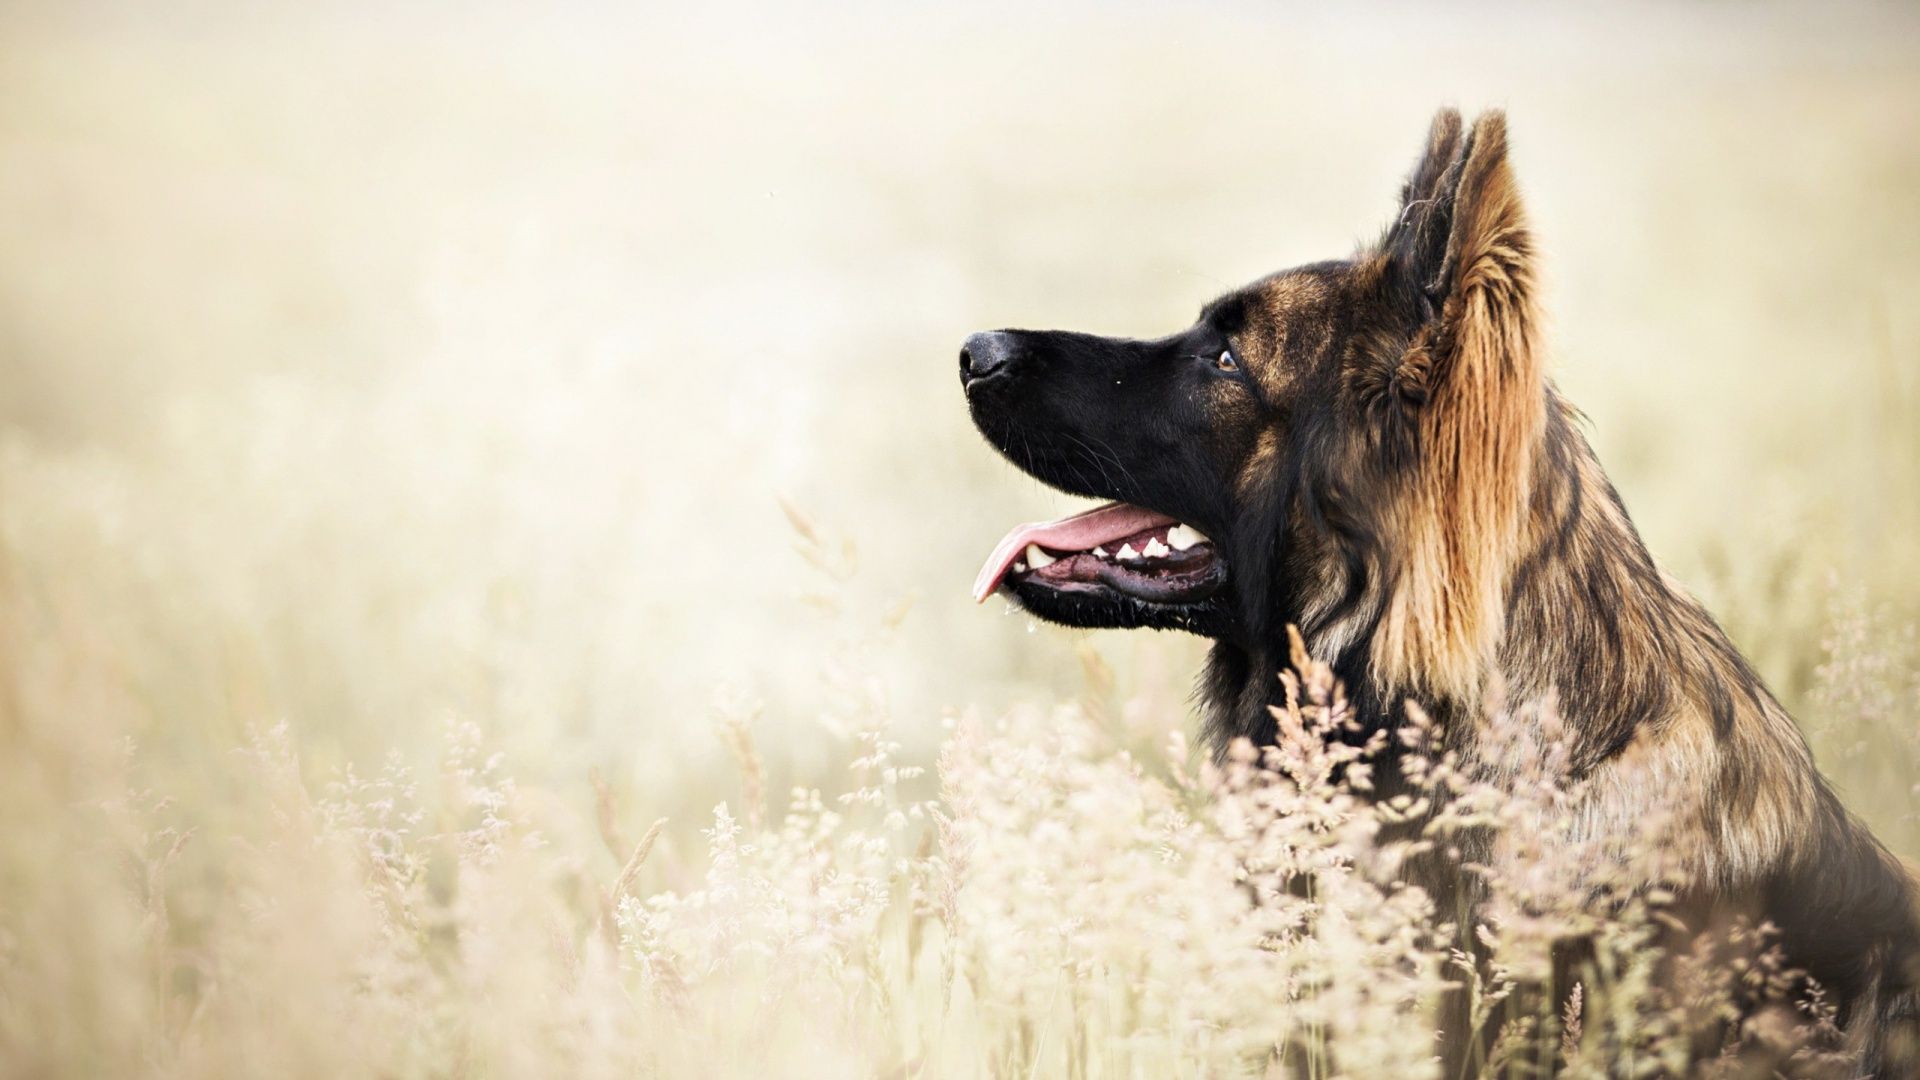 تصویر زمینه نژاد زیبا و خوشگل سگ ژرمن برای Instagram 